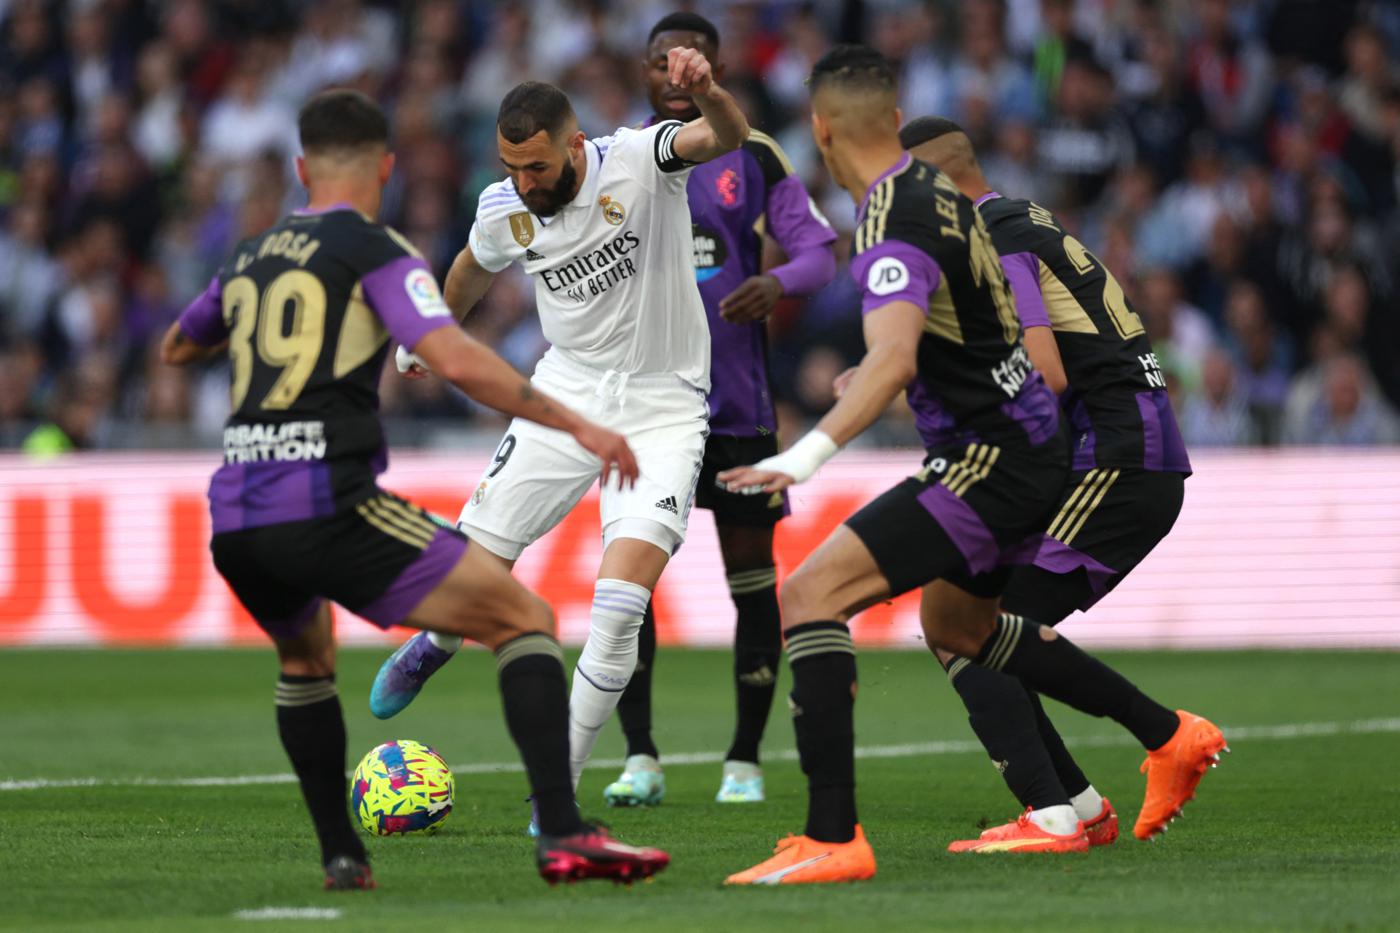 Real - Valladolid - 6:0. Spanische Meisterschaft, 27. Runde. Spielbericht, Statistiken